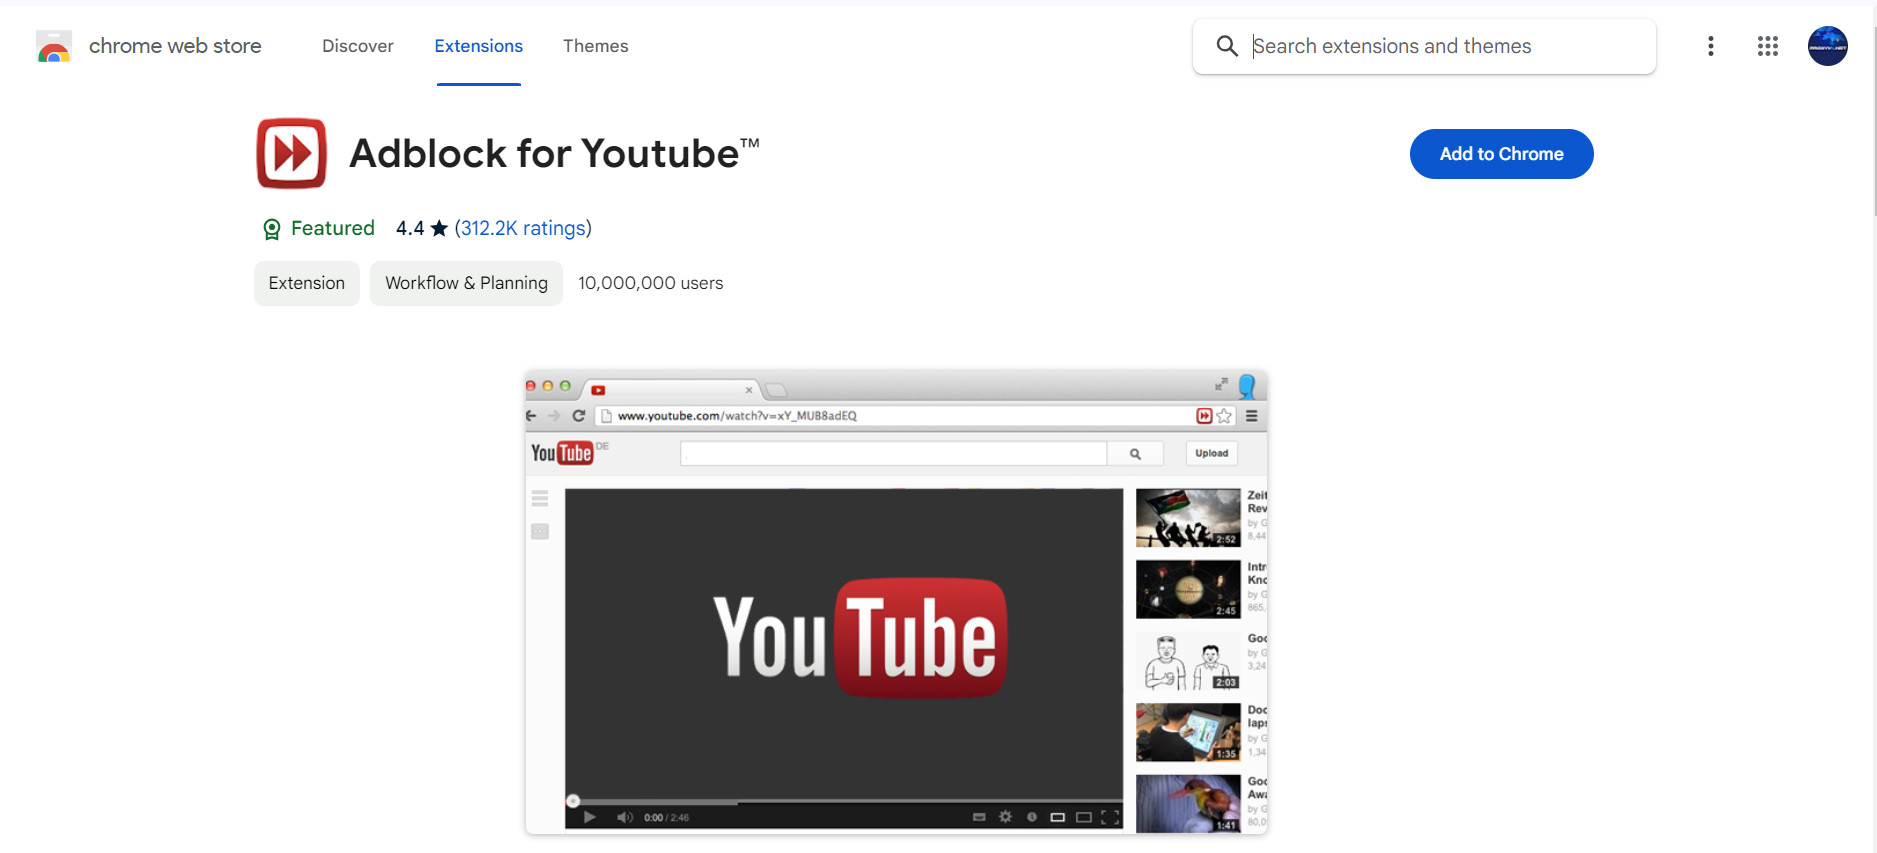 Tiện ích Adblock for Youtube chặn quảng cáo YouTube